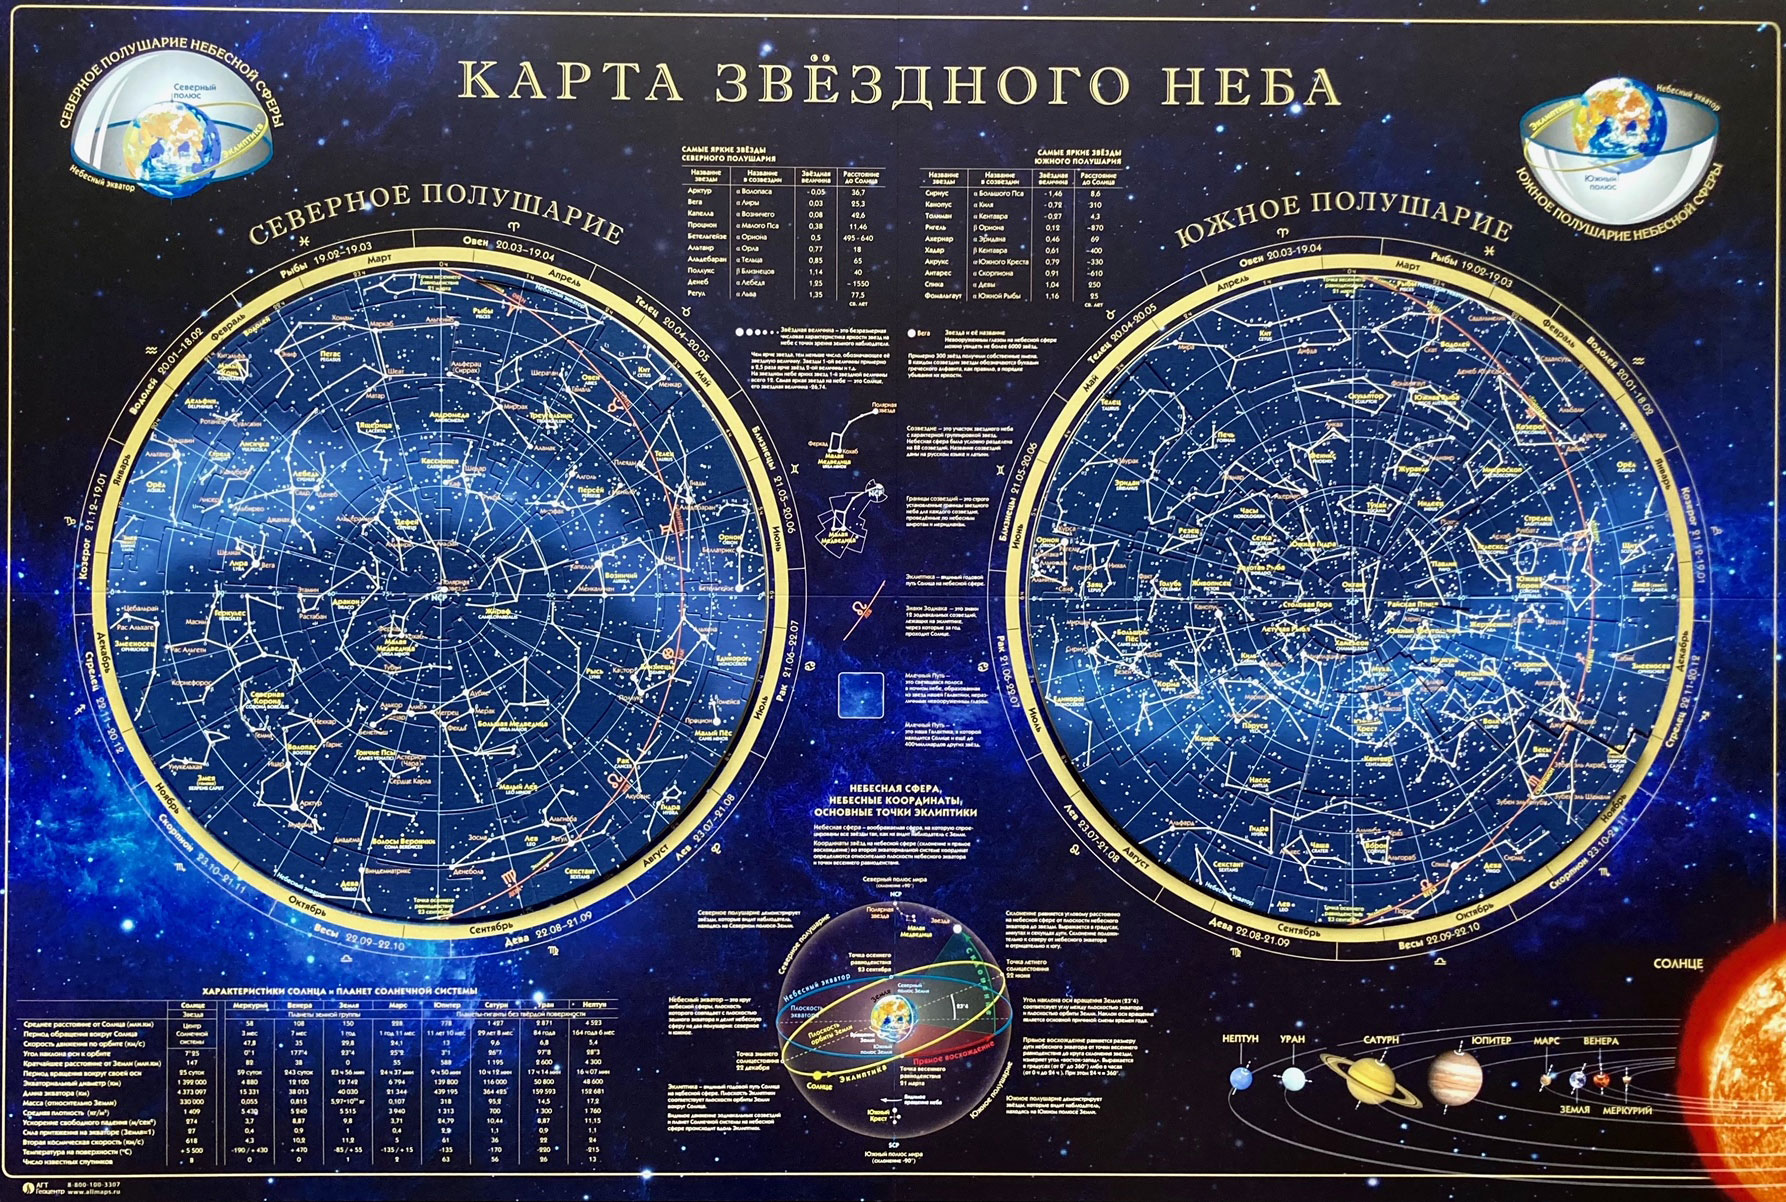 Карта-пазл «Звездное небо», по созвездиям